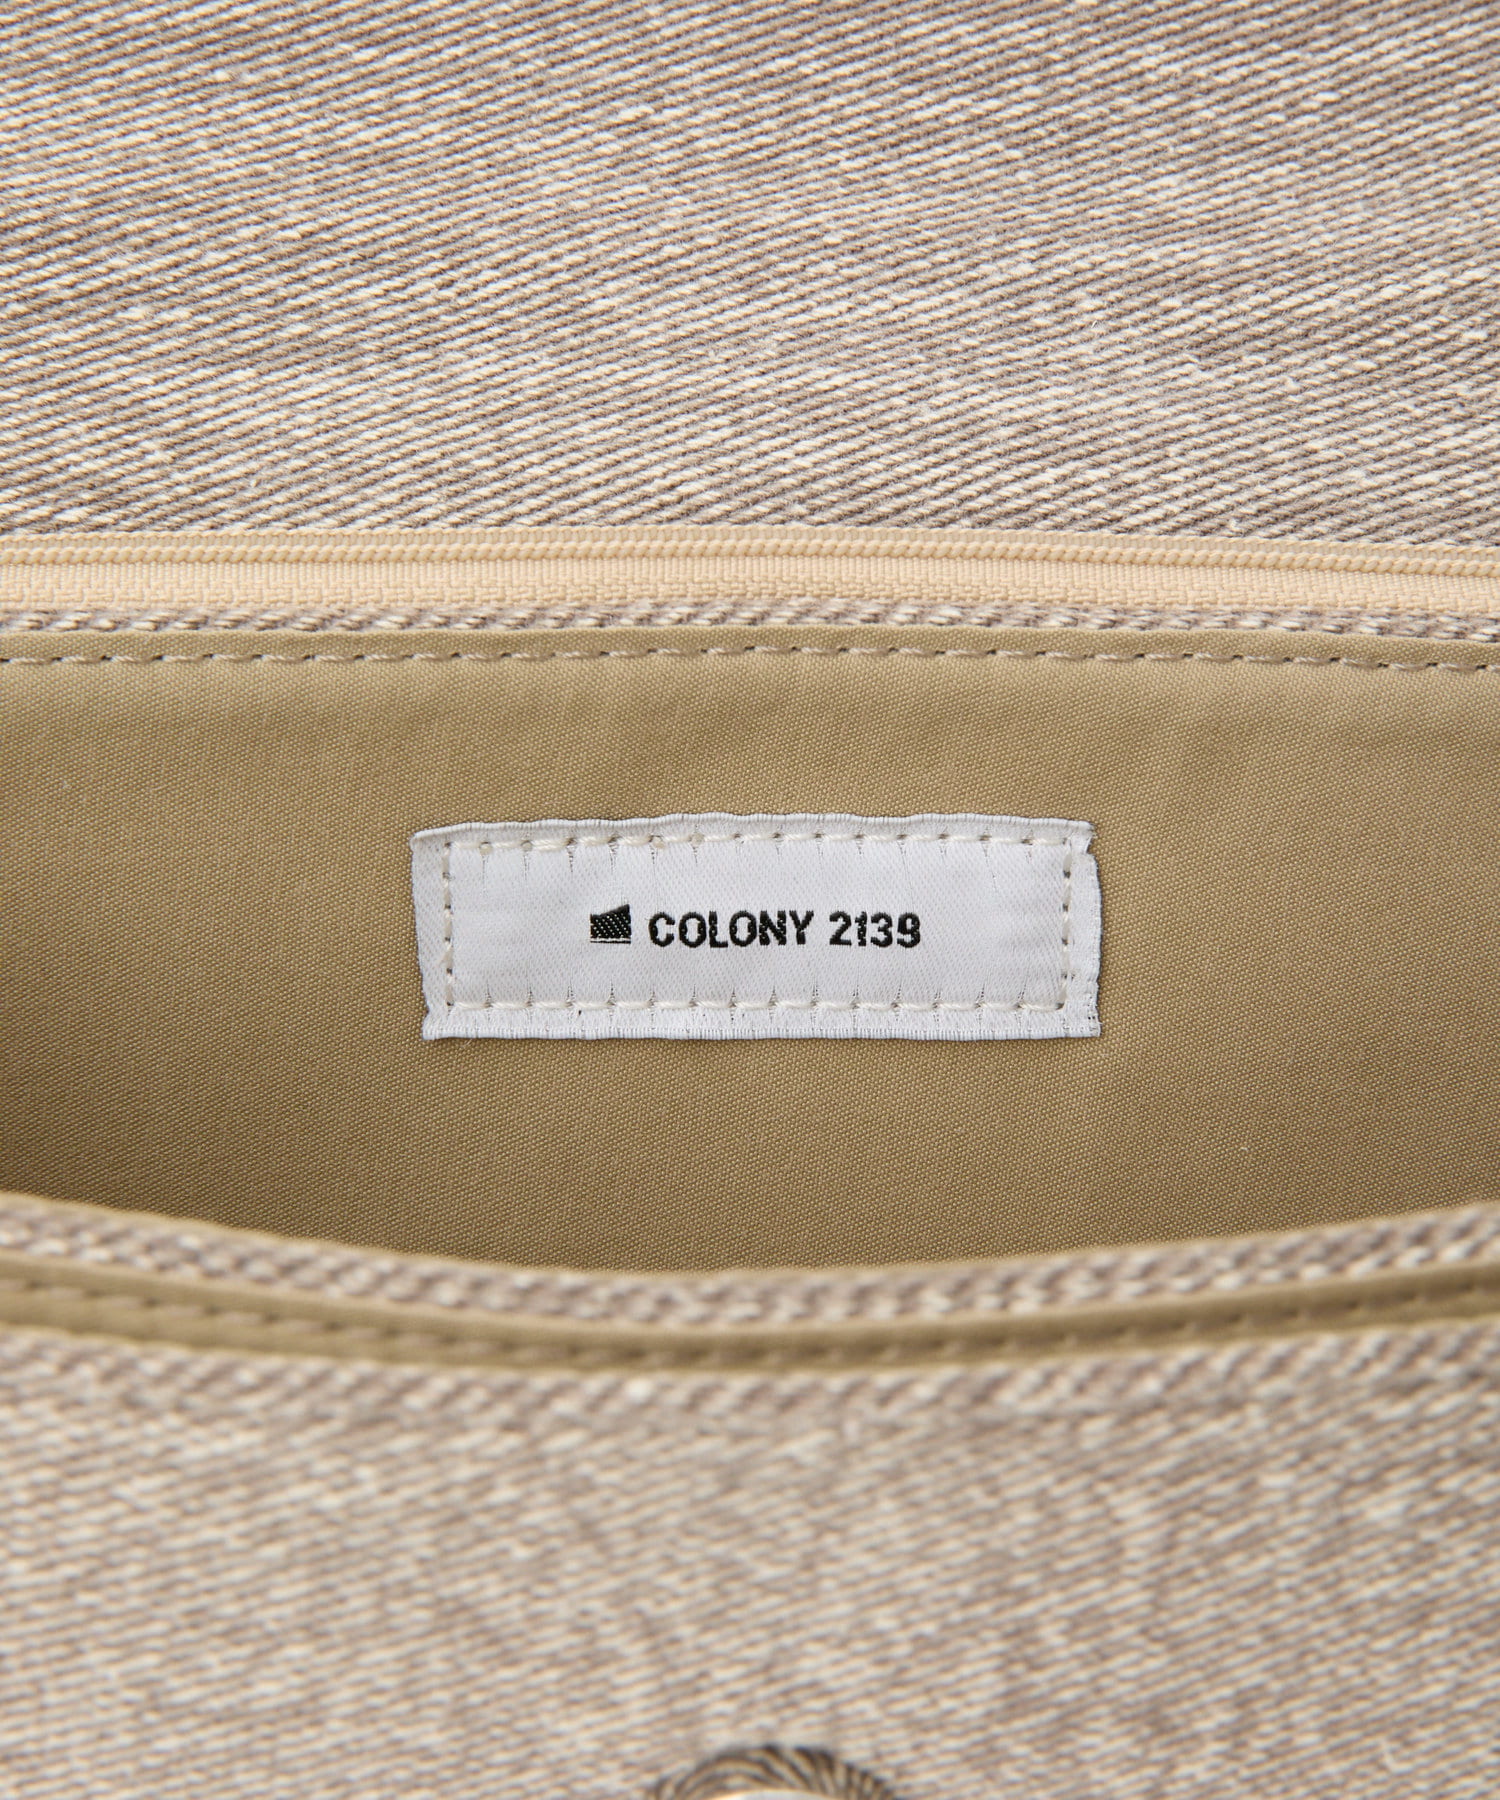 COLONY 2139(コロニー トゥーワンスリーナイン) フリンジデニムハンドバッグ